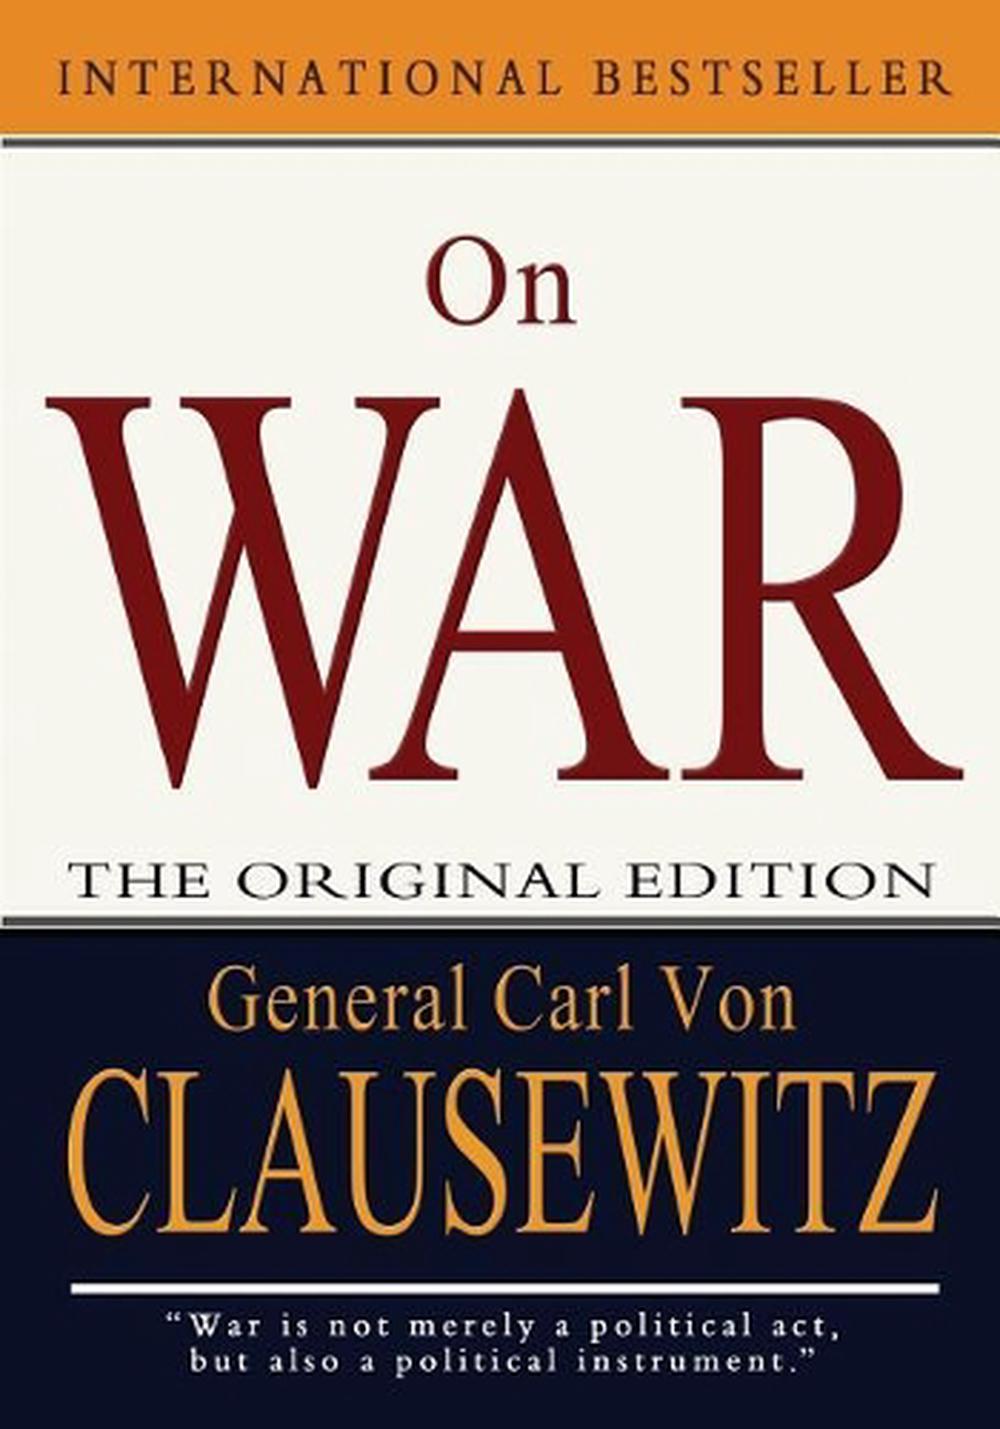 On War by Carl von Clausewitz